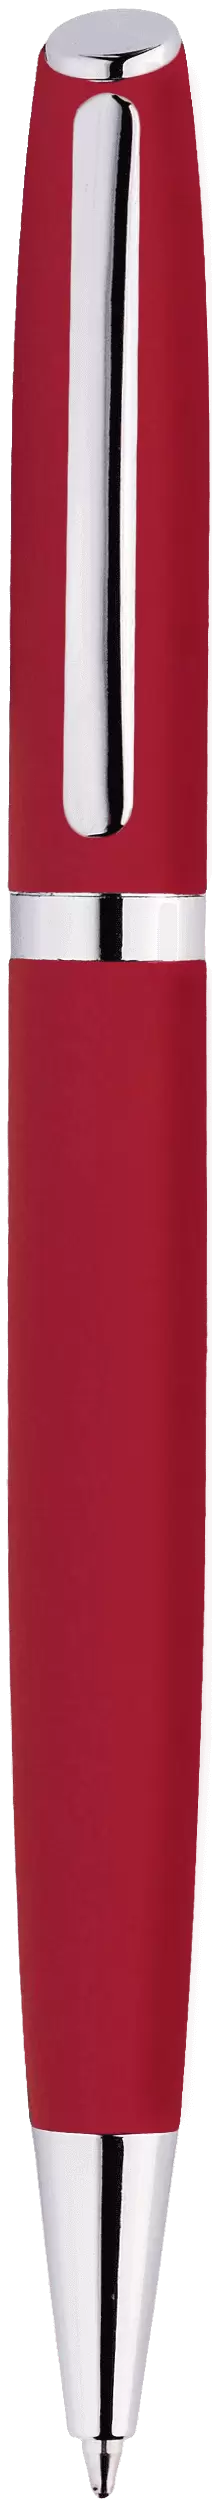 Ручка VESTA SOFT Красная 1121-03NEW